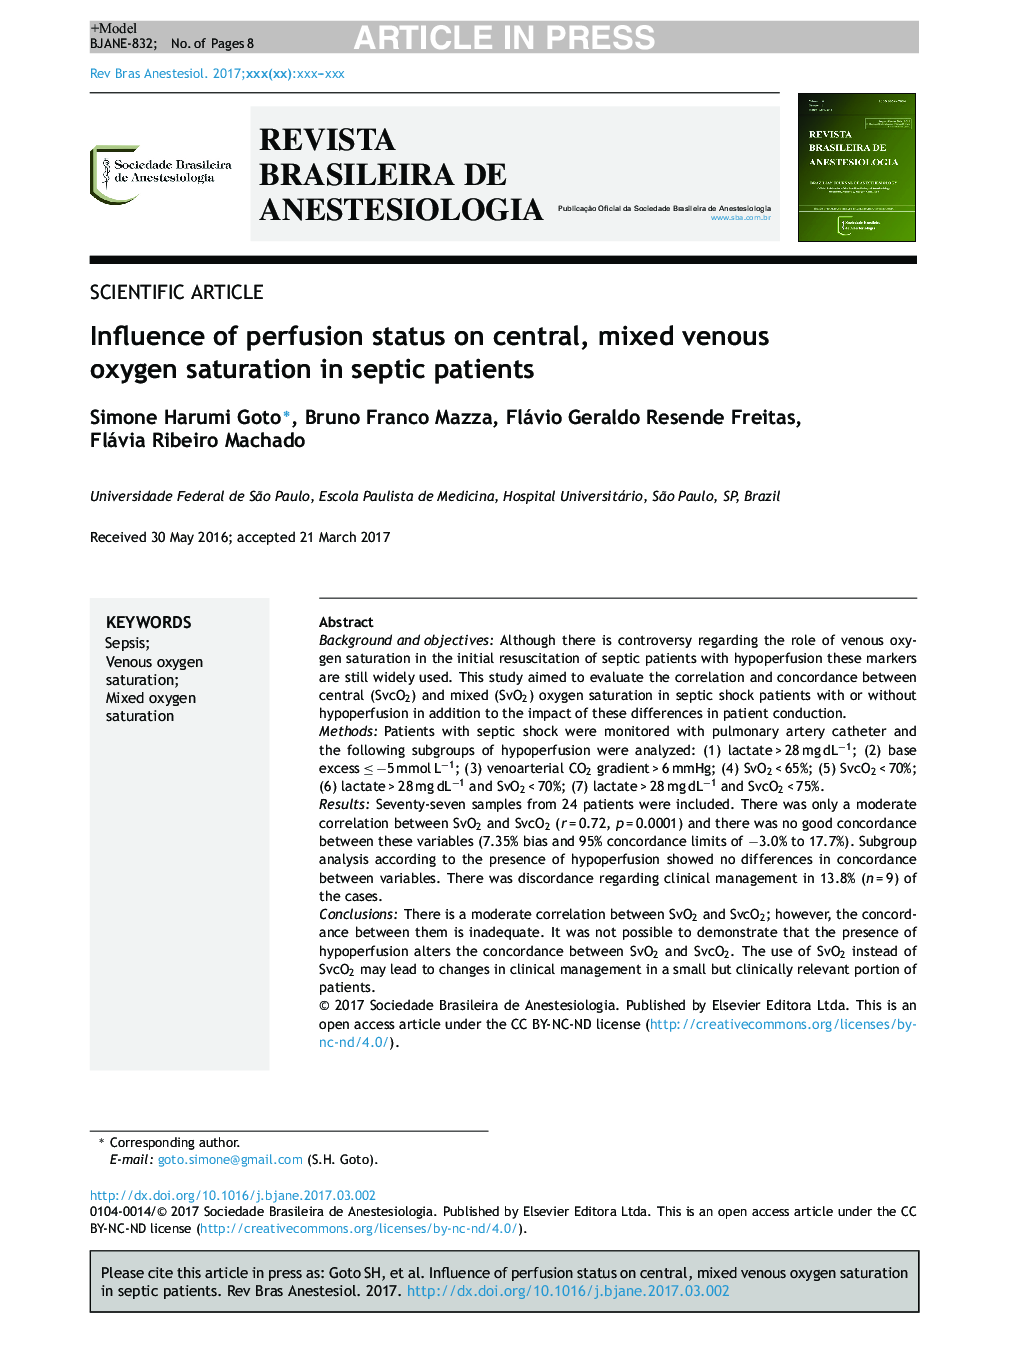 تأثیر وضعیت پرفیوژن در اشباع اکسیژن وریدی و مرکزی در بیماران سپتیک 